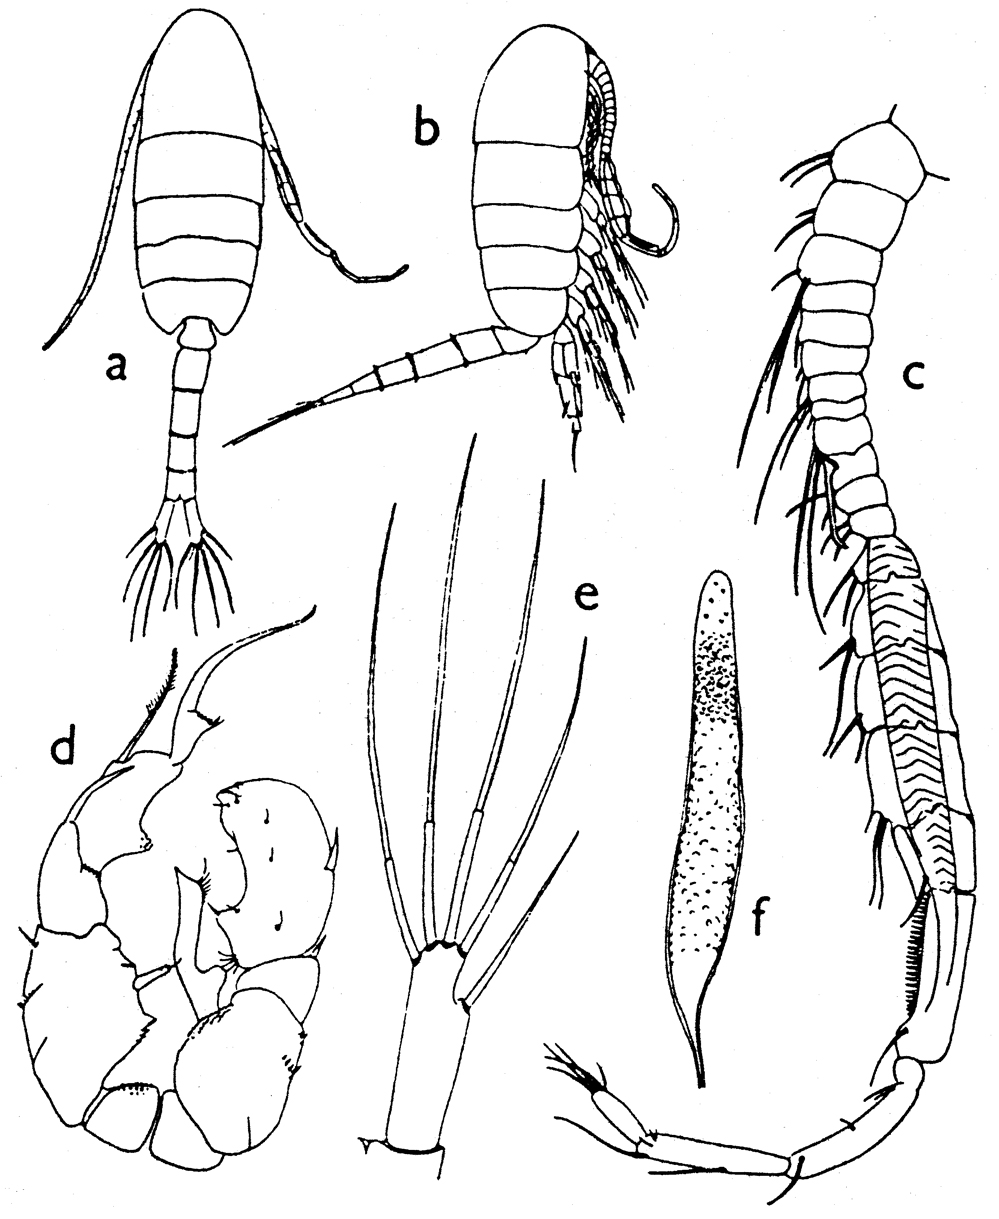 Espèce Pseudodiaptomus hessei - Planche 5 de figures morphologiques